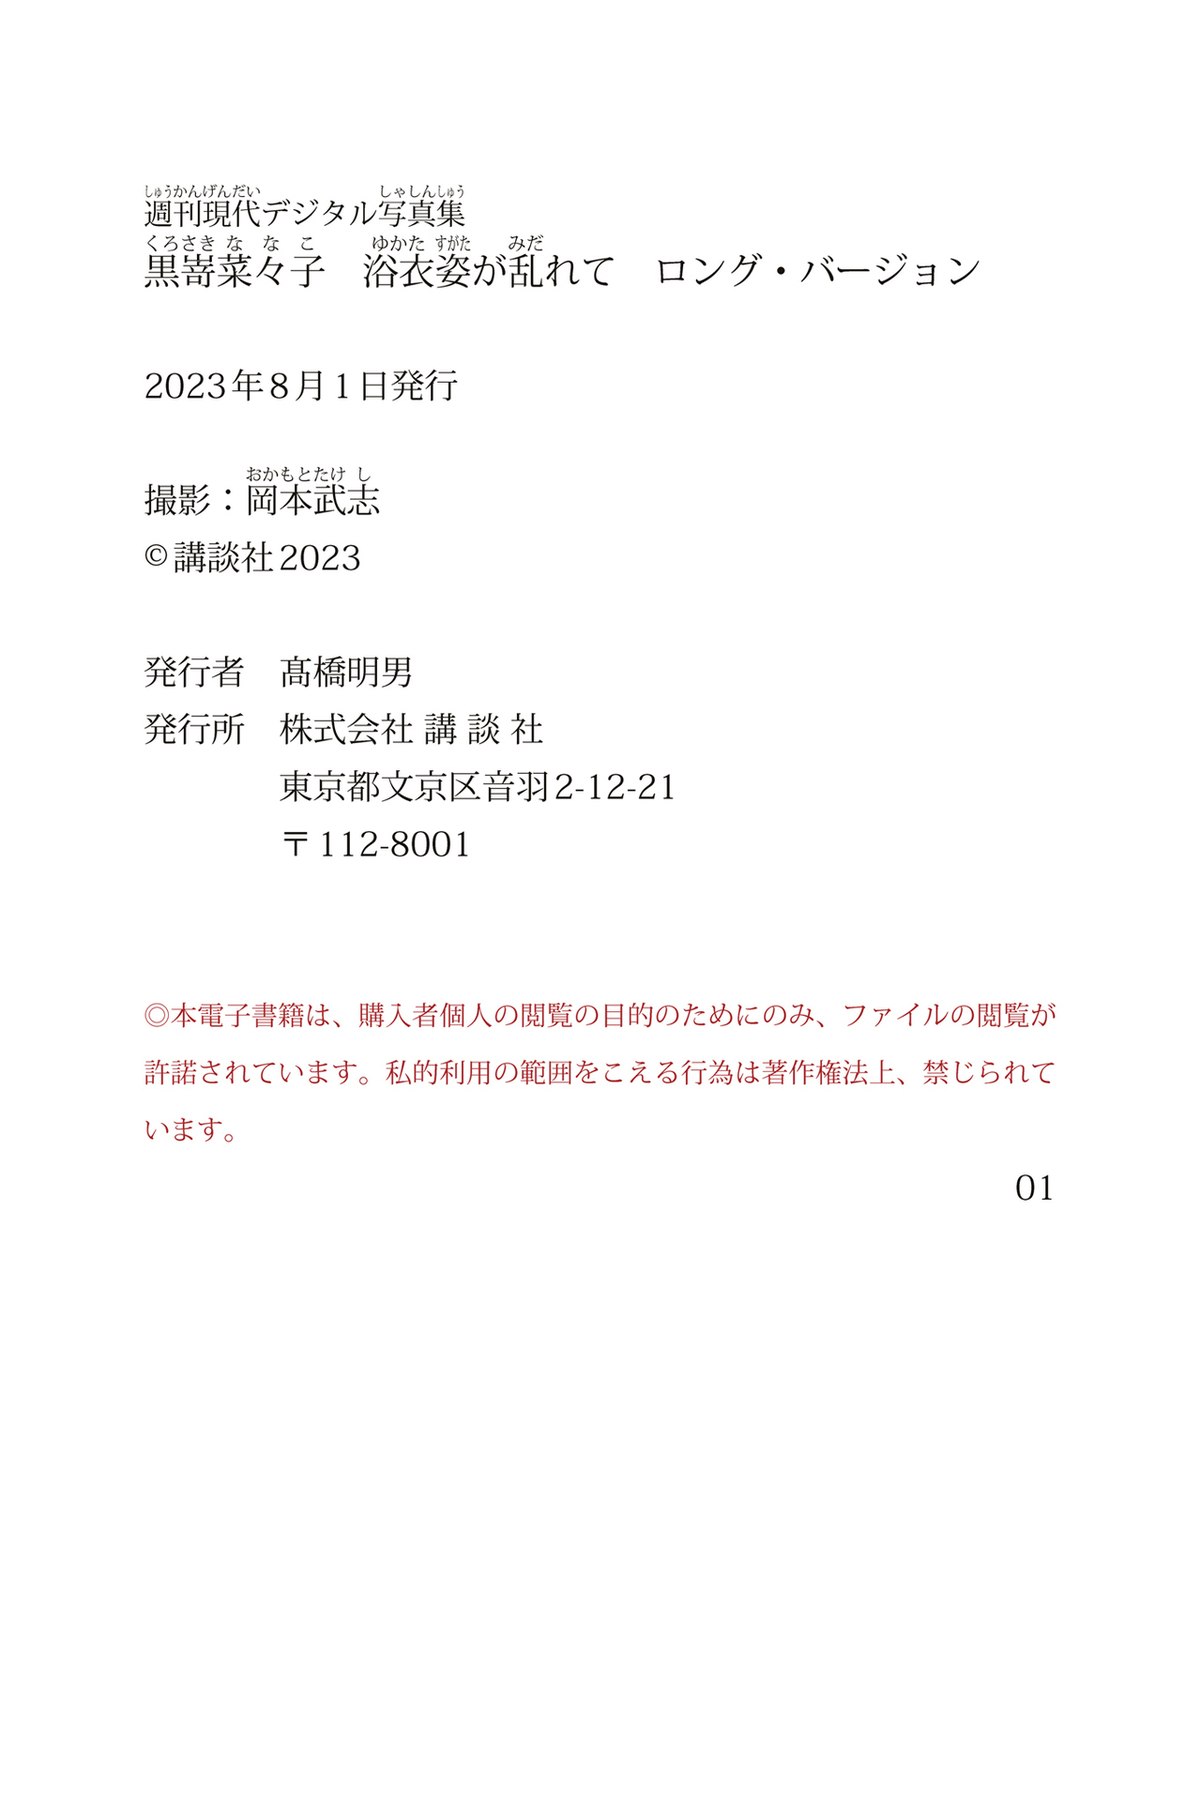 Weekly Gendai Photobook 2023 07 28 Nanako Kurosaki 黒嵜菜々子 Yukata Appearance Is Disheveled 0109 8239868645.jpg